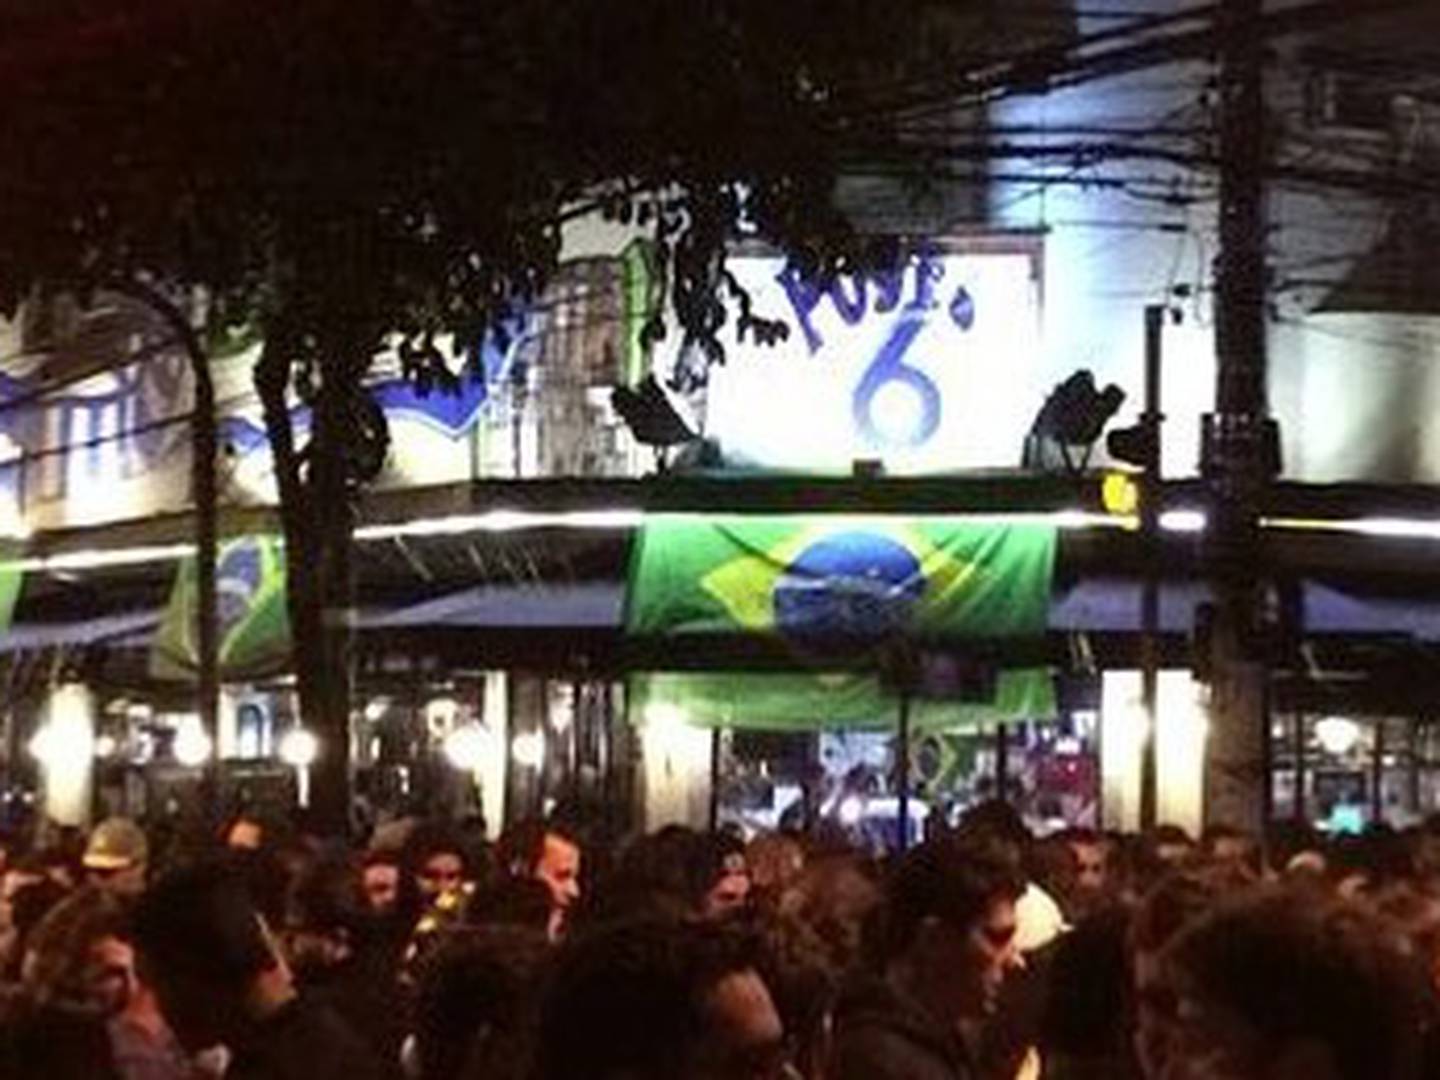 9 bares para ver jogos de futebol em São Paulo